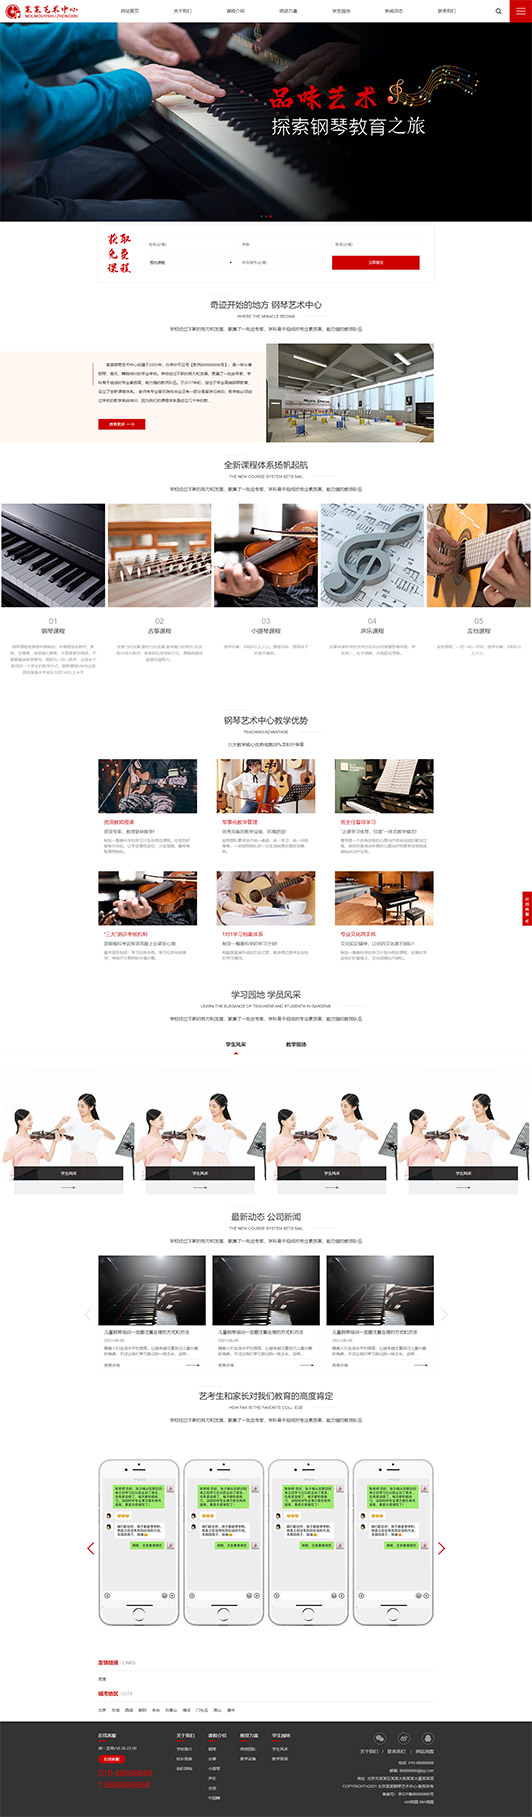 贵港钢琴艺术培训公司响应式企业网站